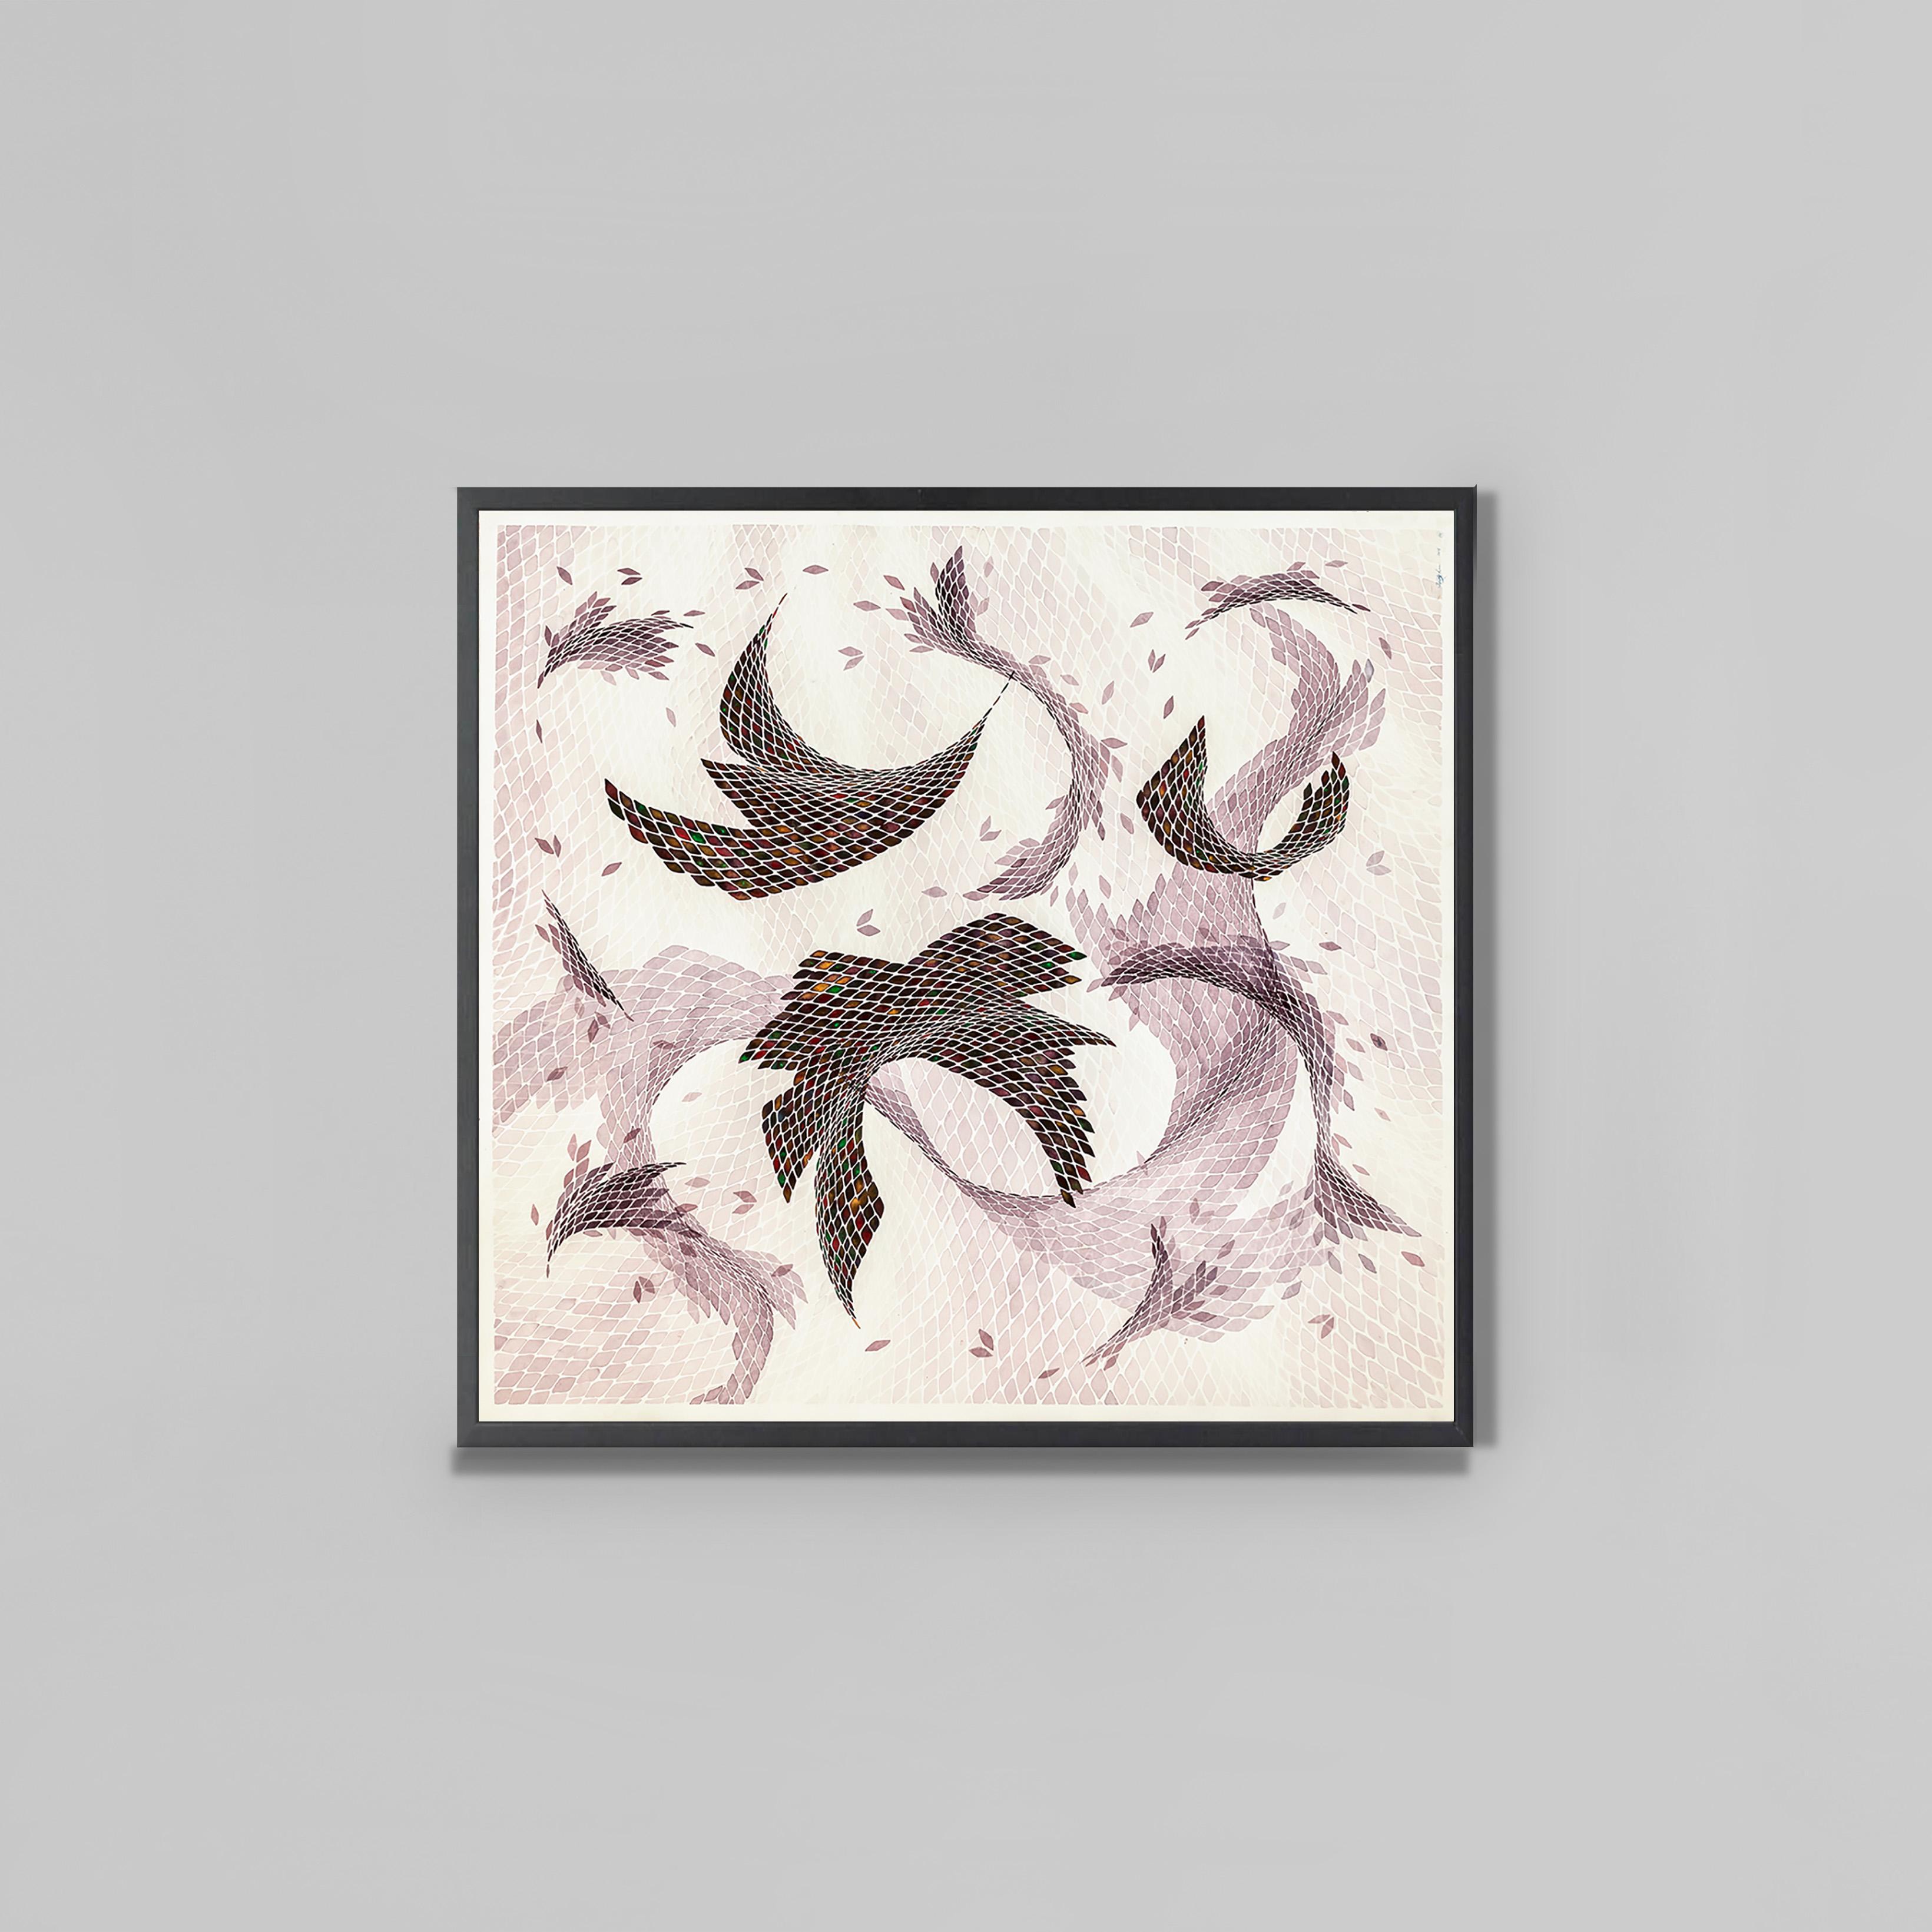 Timothy Hyunsoo Lee 
Composition III
Aquarelle sur papier			
113 x 109 cm